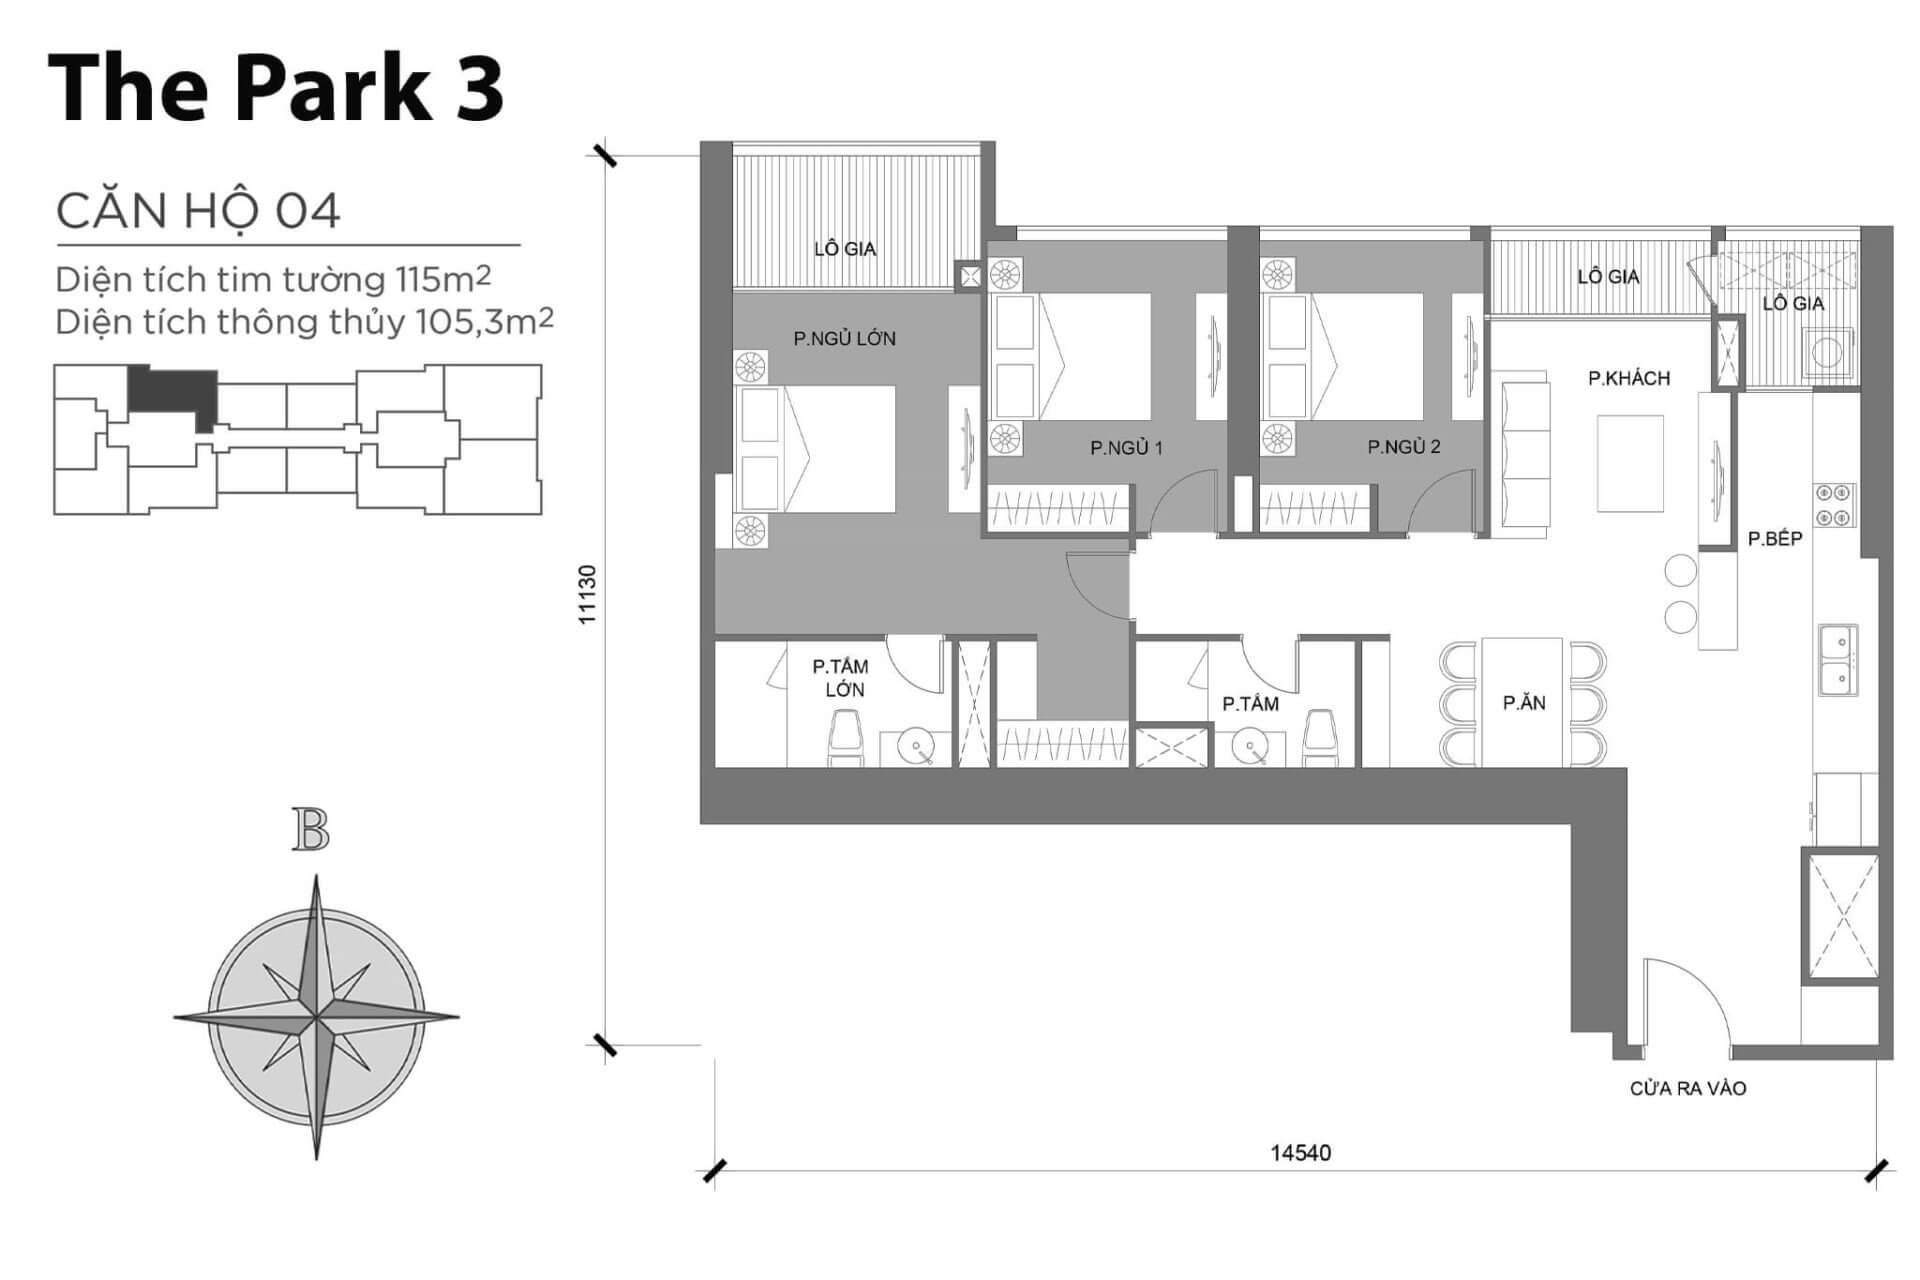 mặt bằng layout căn hộ số 04 Park 3 Vinhomes Central Park